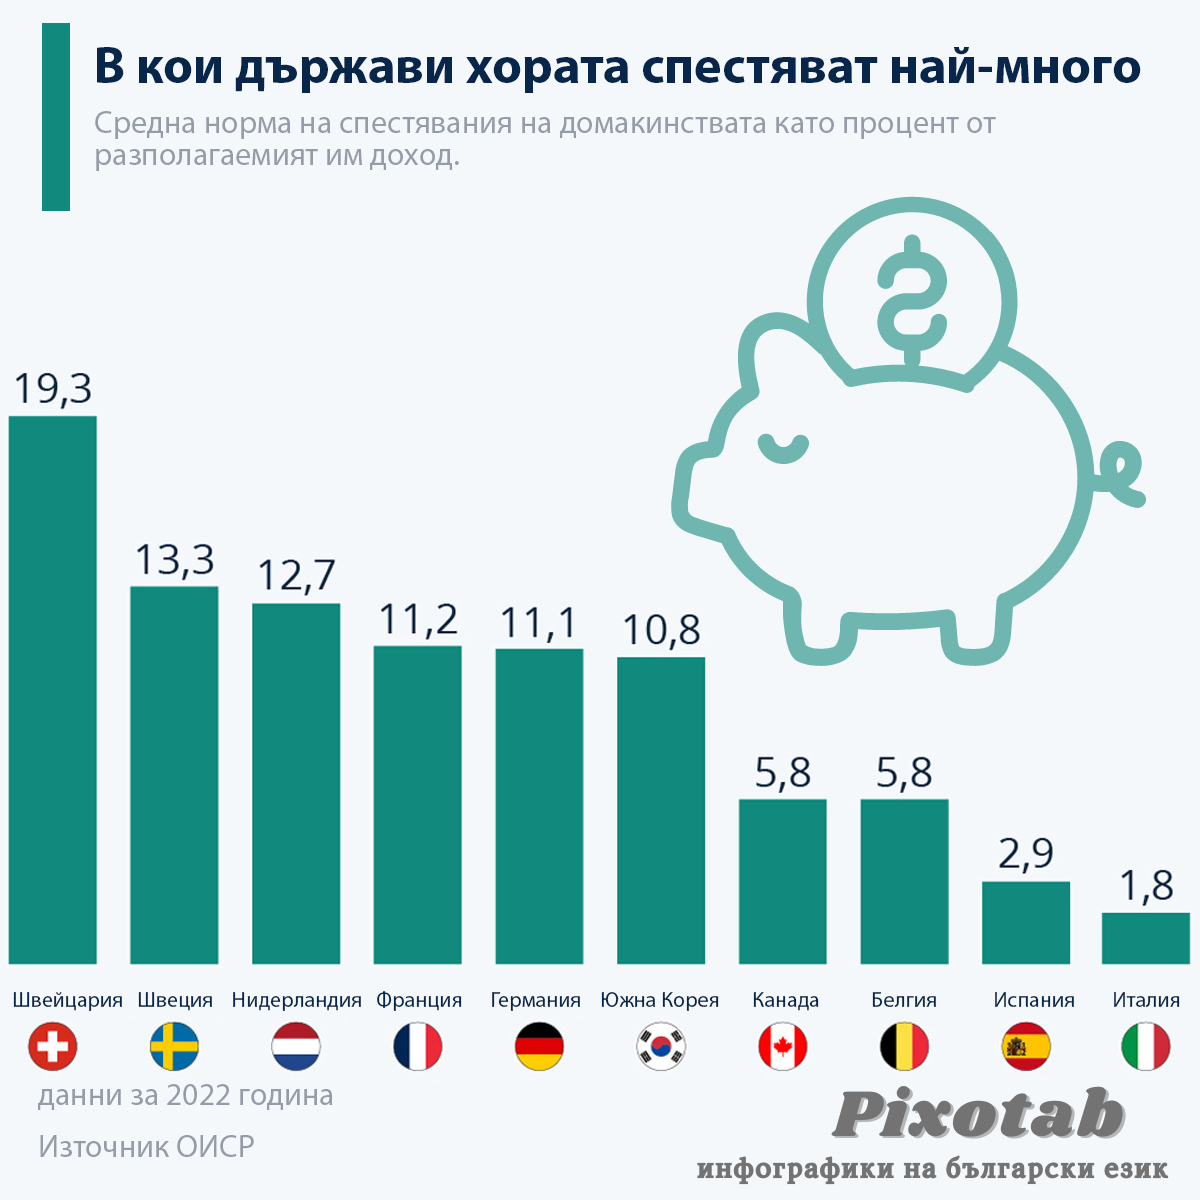 В кои държави хората спестяват най-много